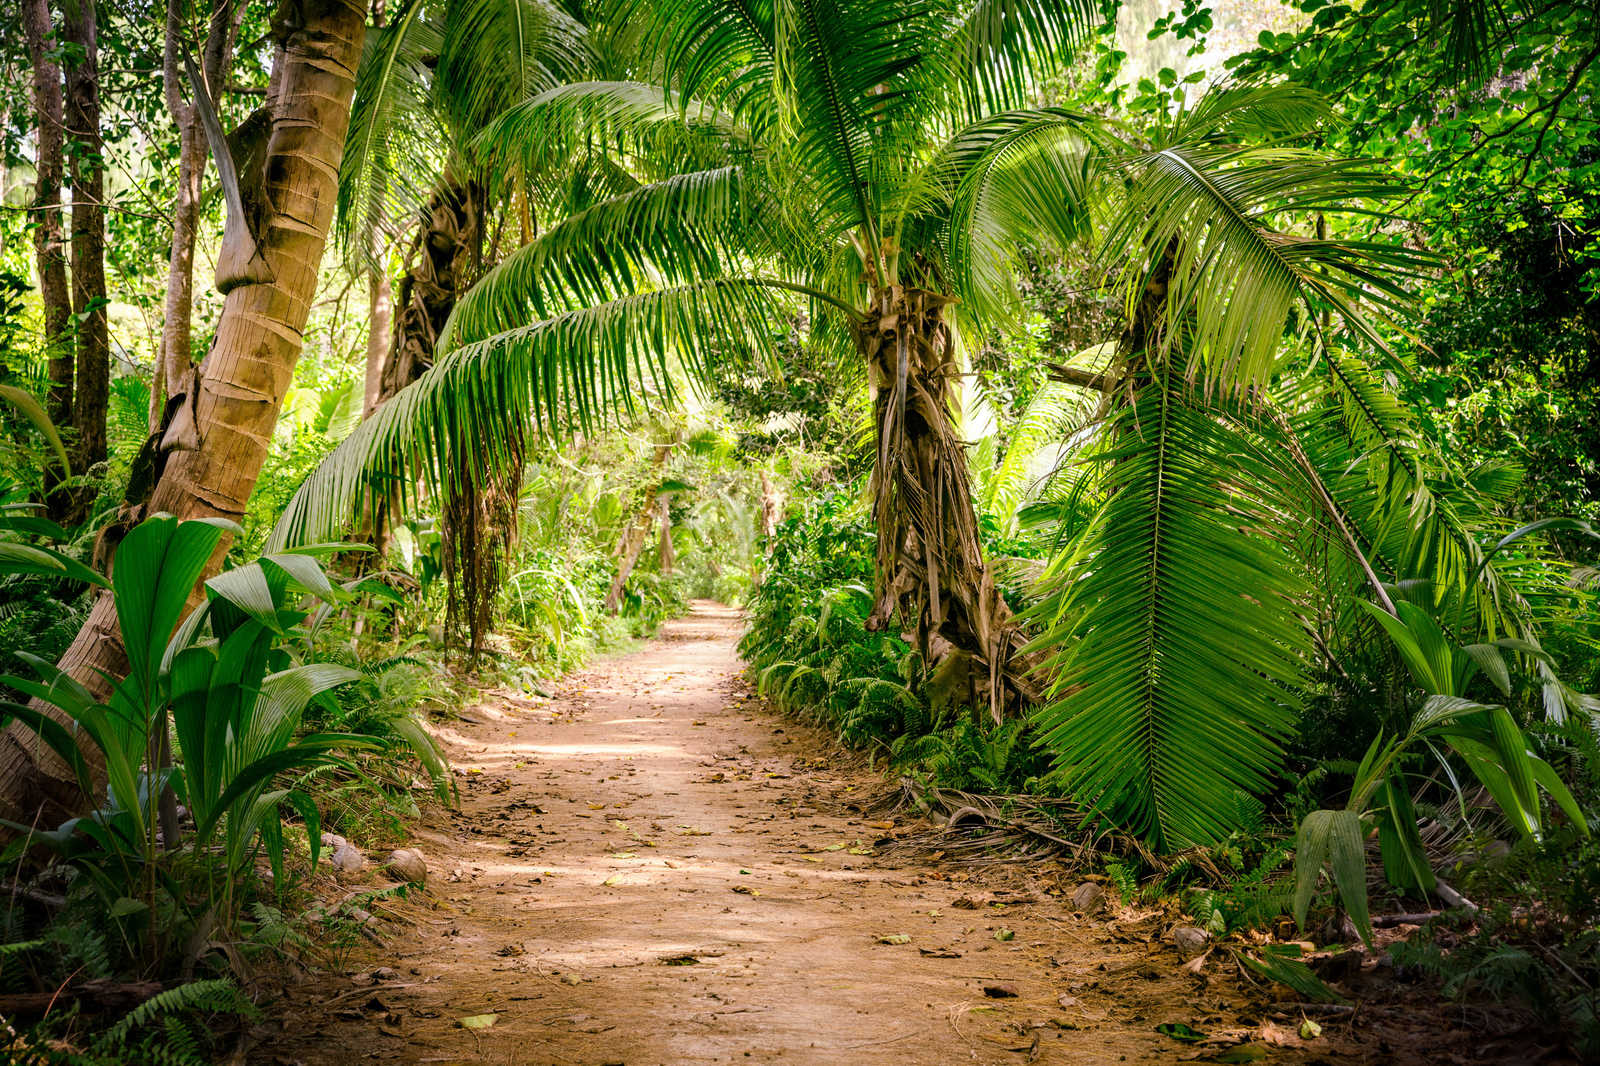             Leinwand mit Palmenweg durch eine tropische Landschaft – 0,90 m x 0,60 m
        